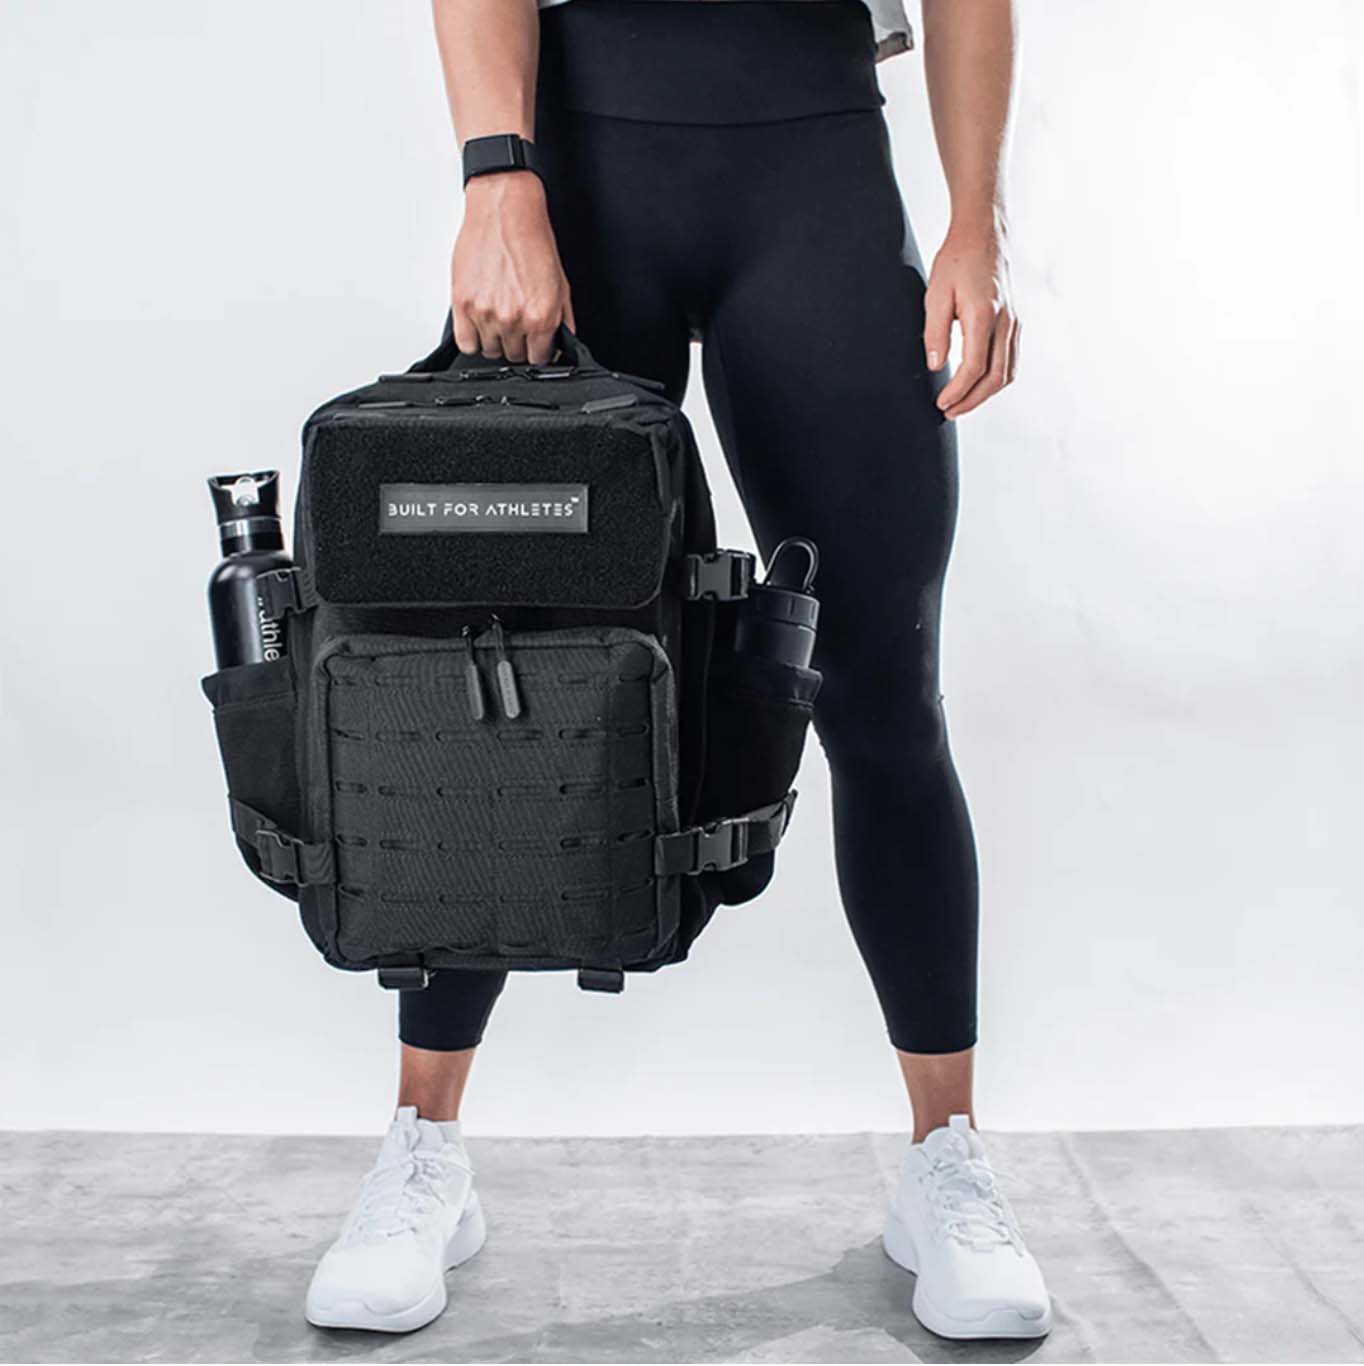 Image of man holding black gym backpack